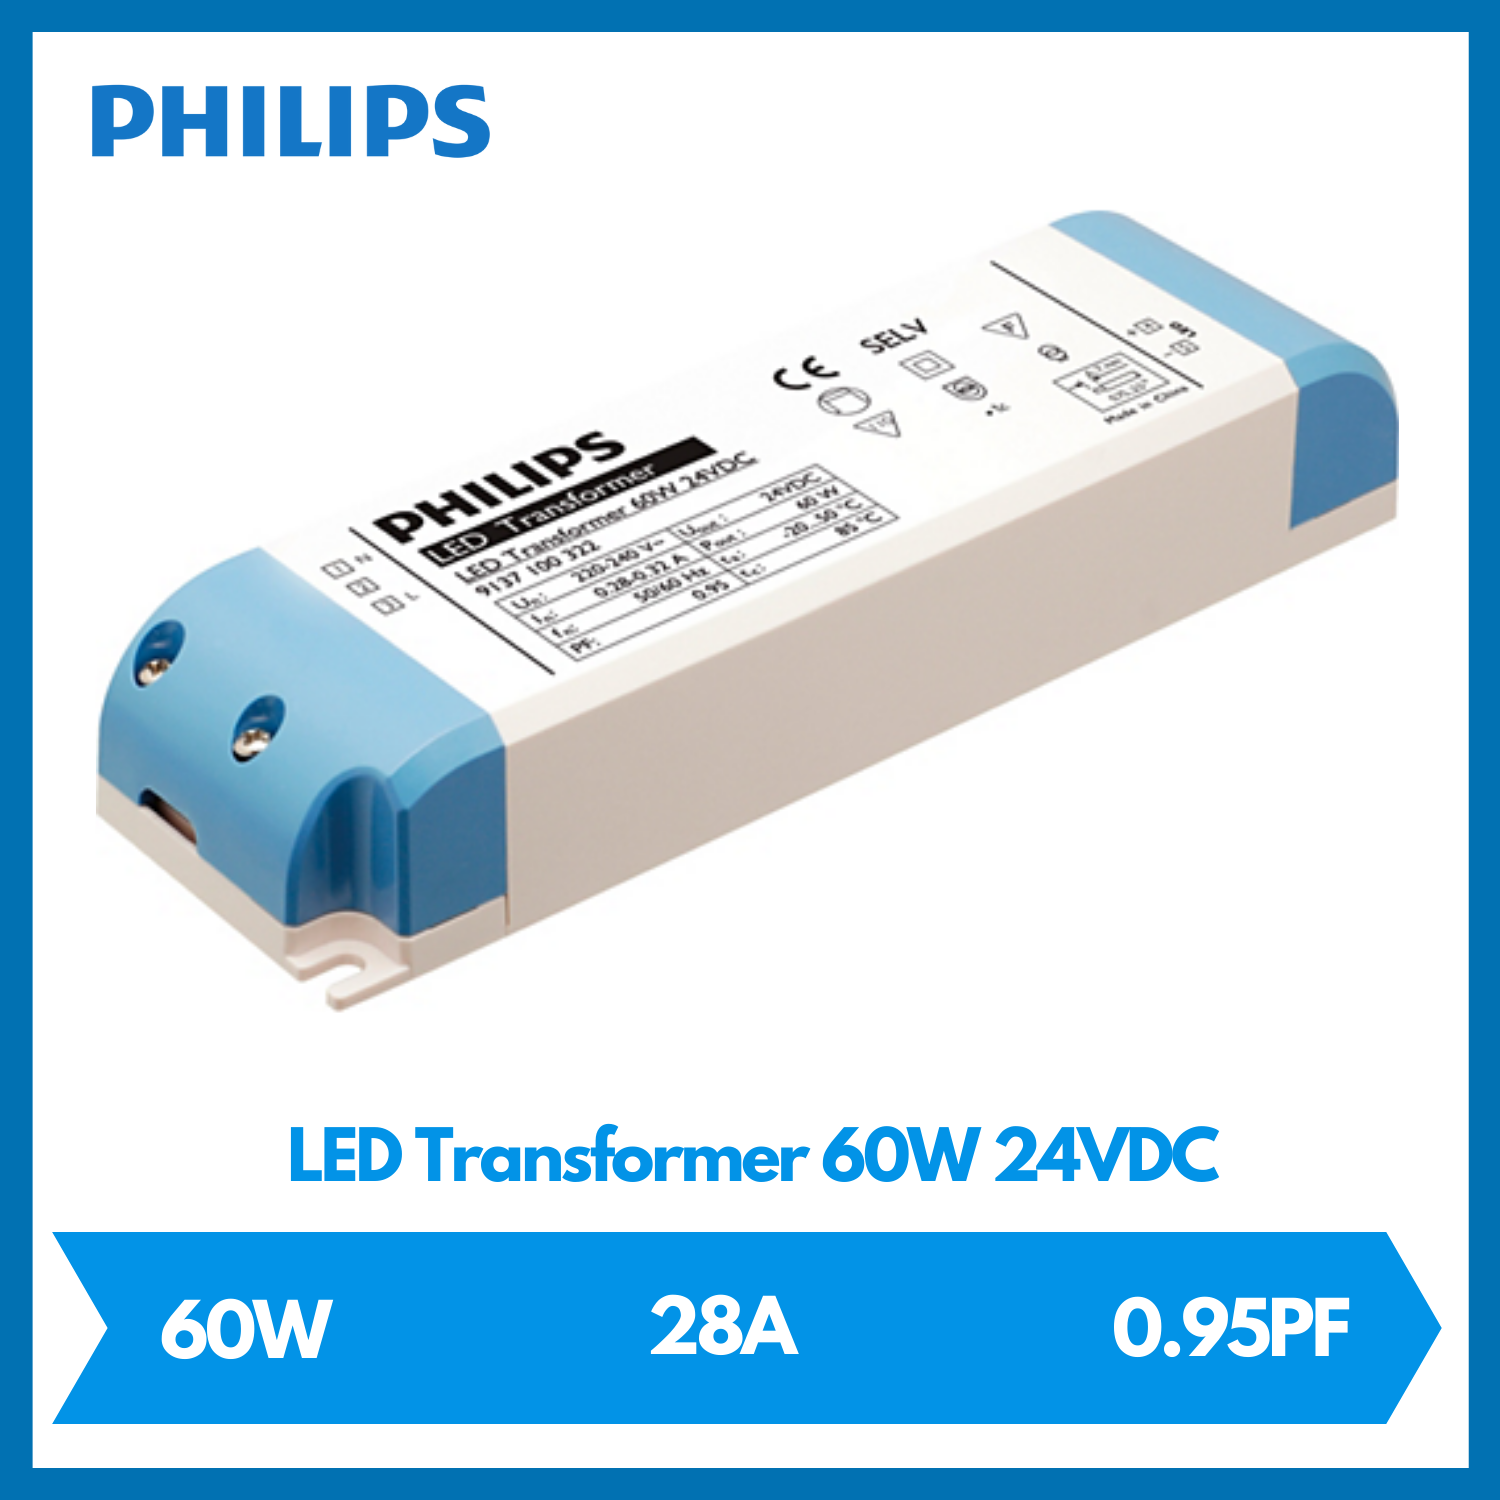 PHILIPS LED TRANSFORMER 60W 24VDC